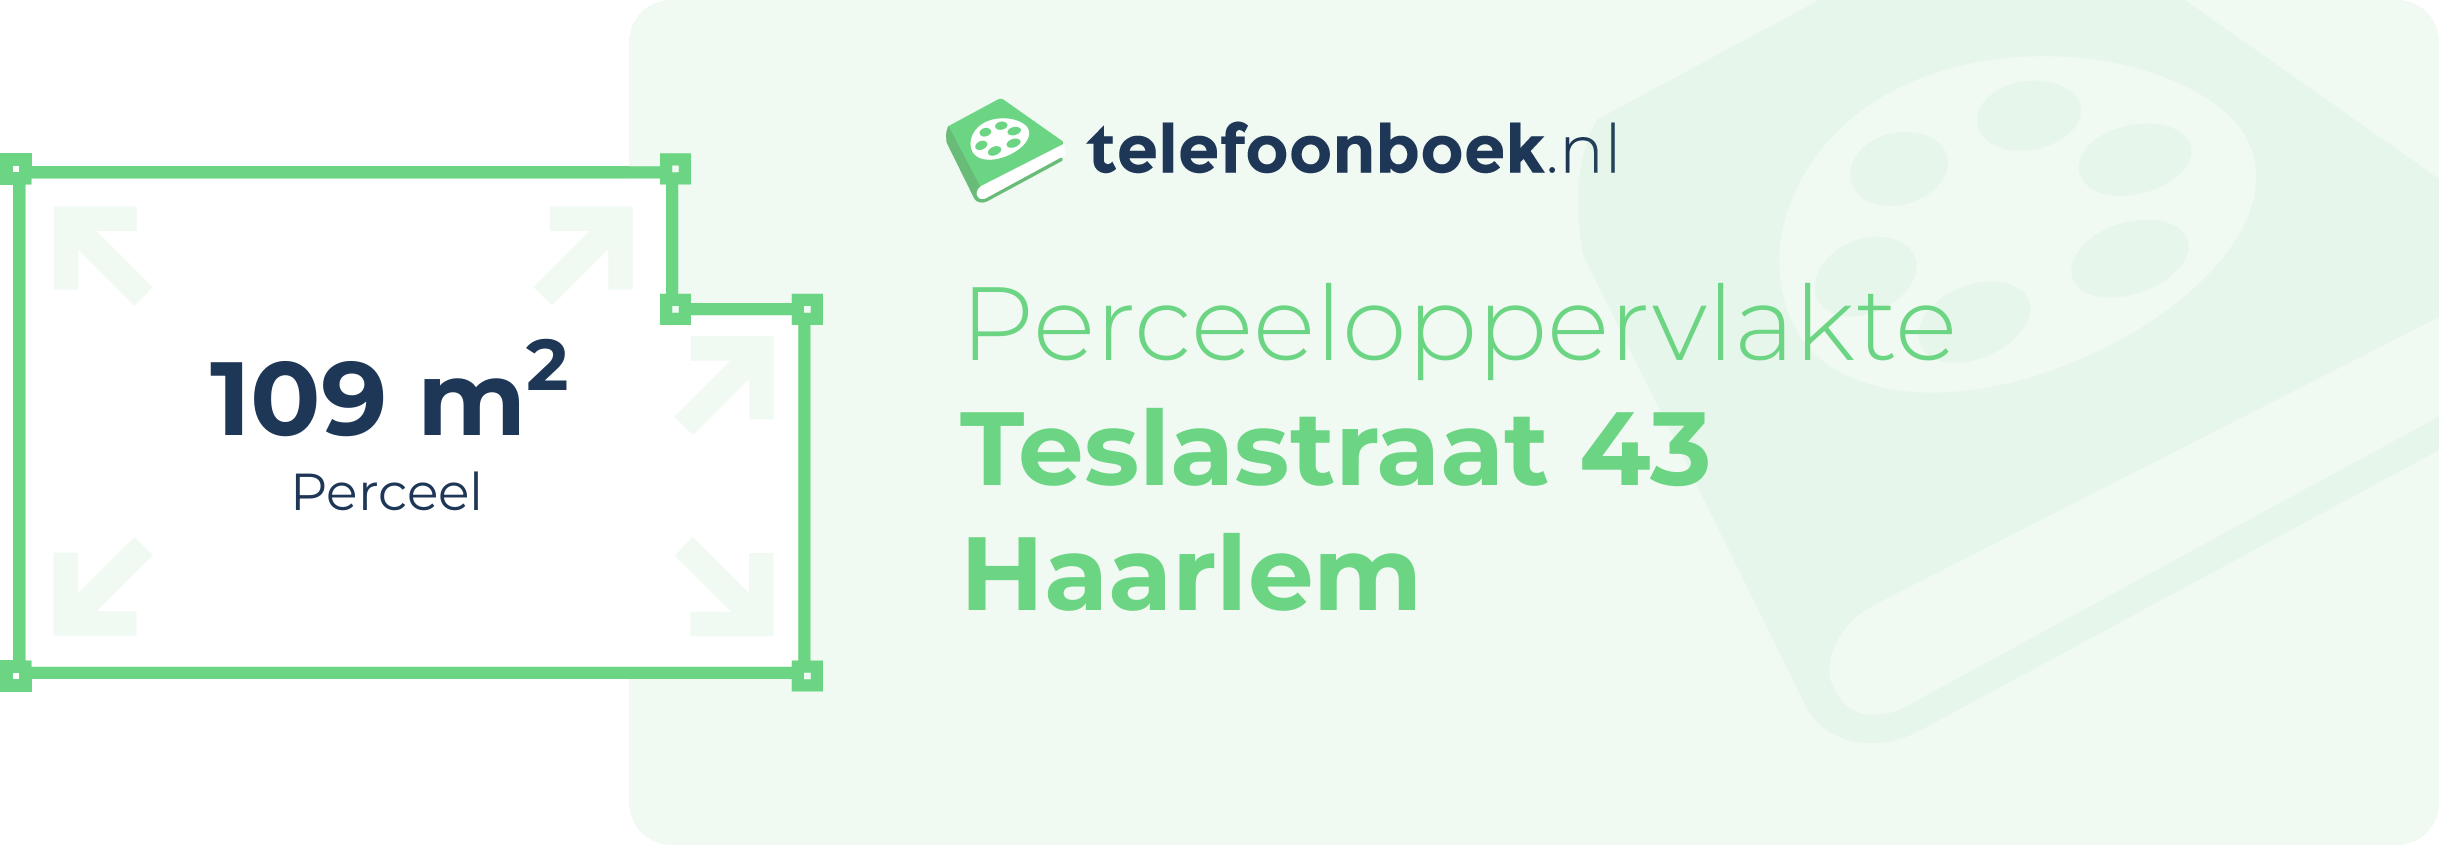 Perceeloppervlakte Teslastraat 43 Haarlem